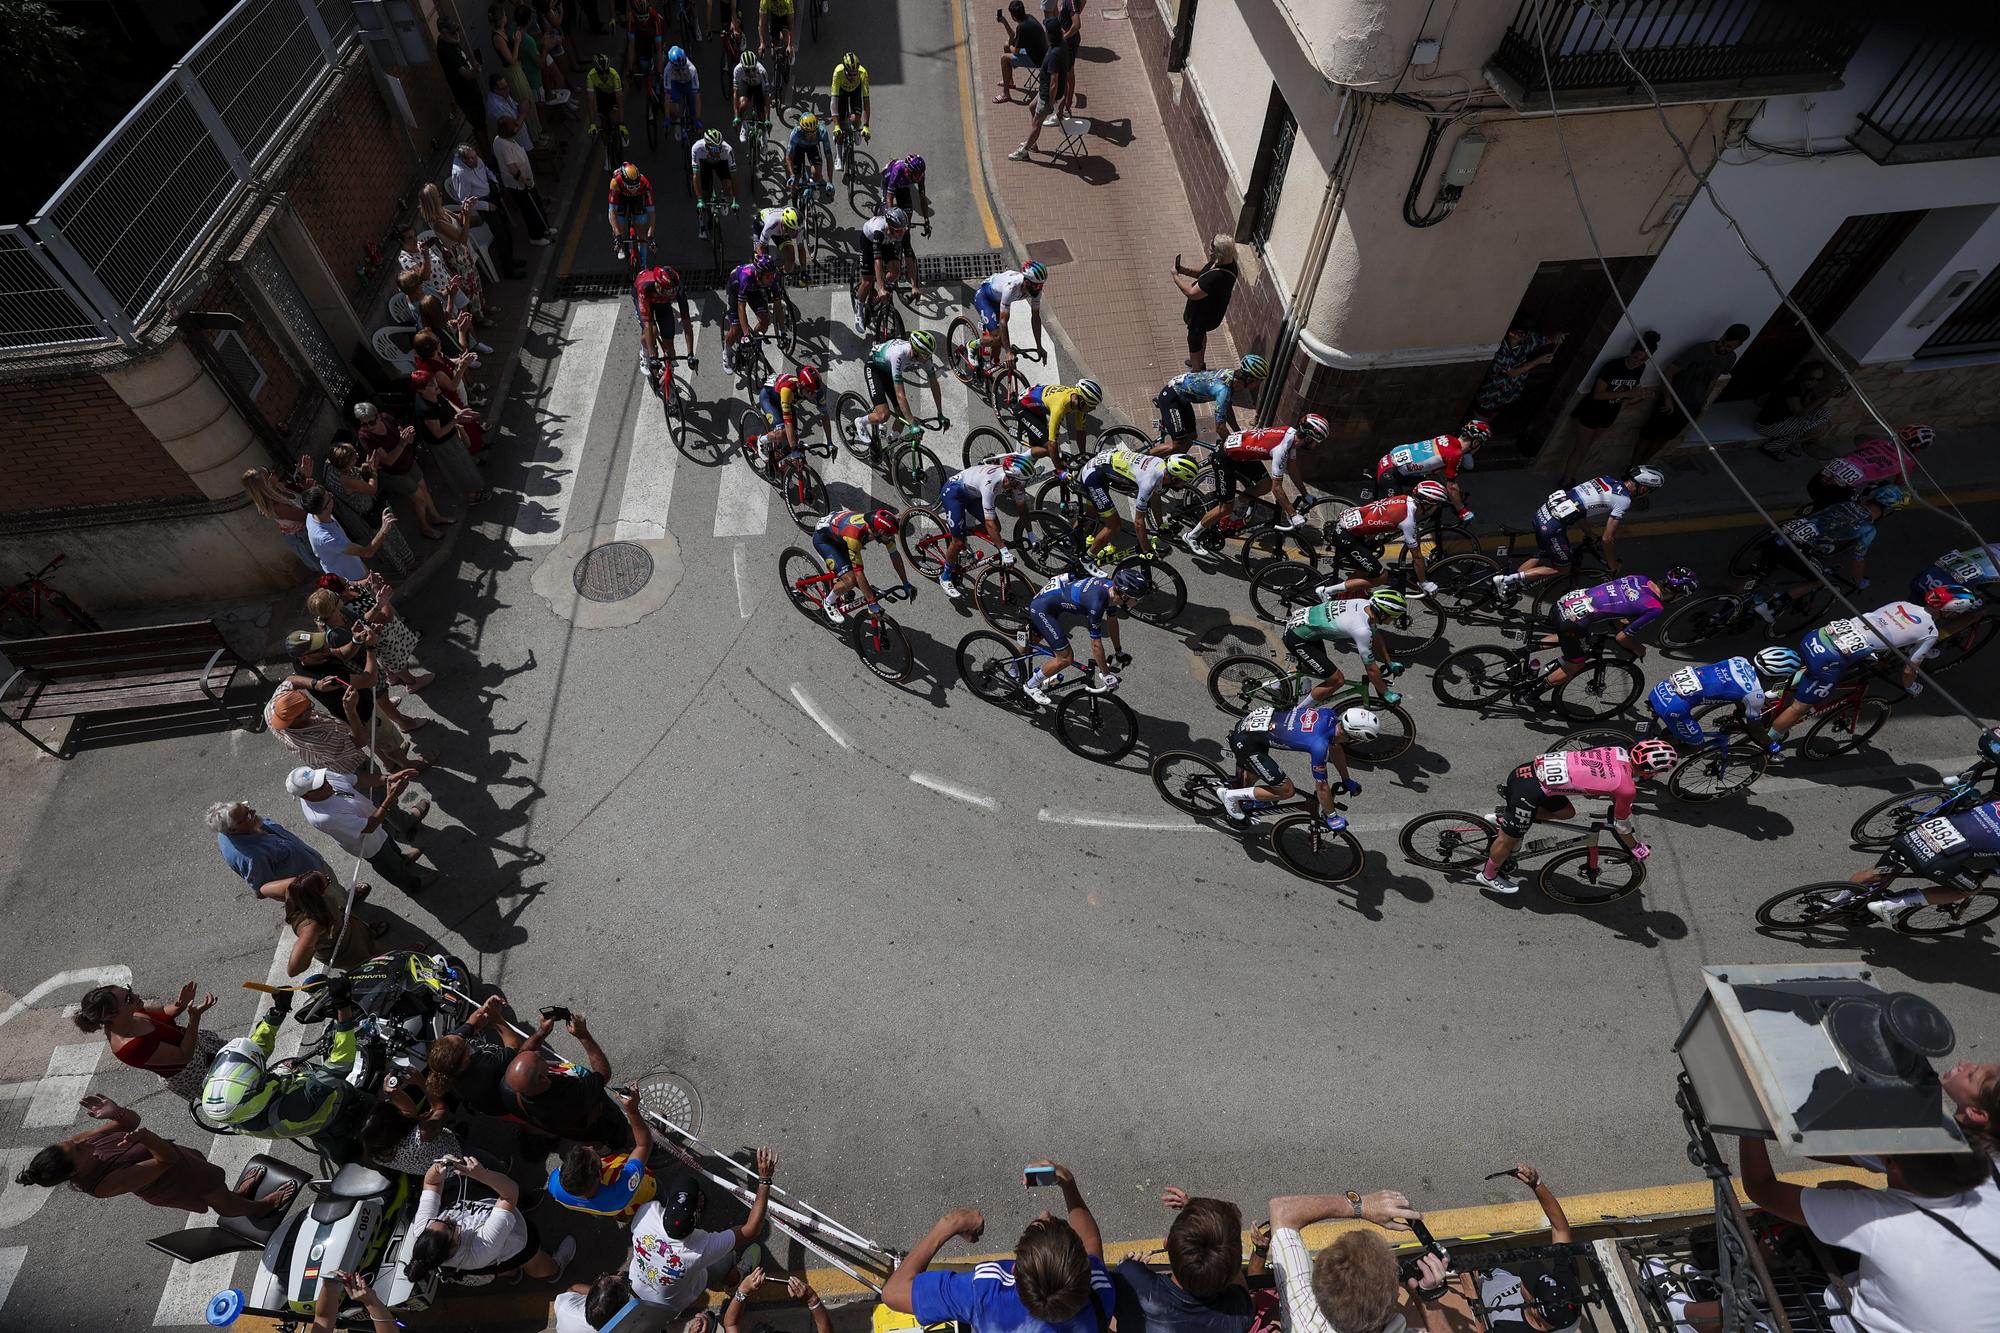 Séptima etapa de la Vuelta Ciclista a España 202. Utiel-Oliva